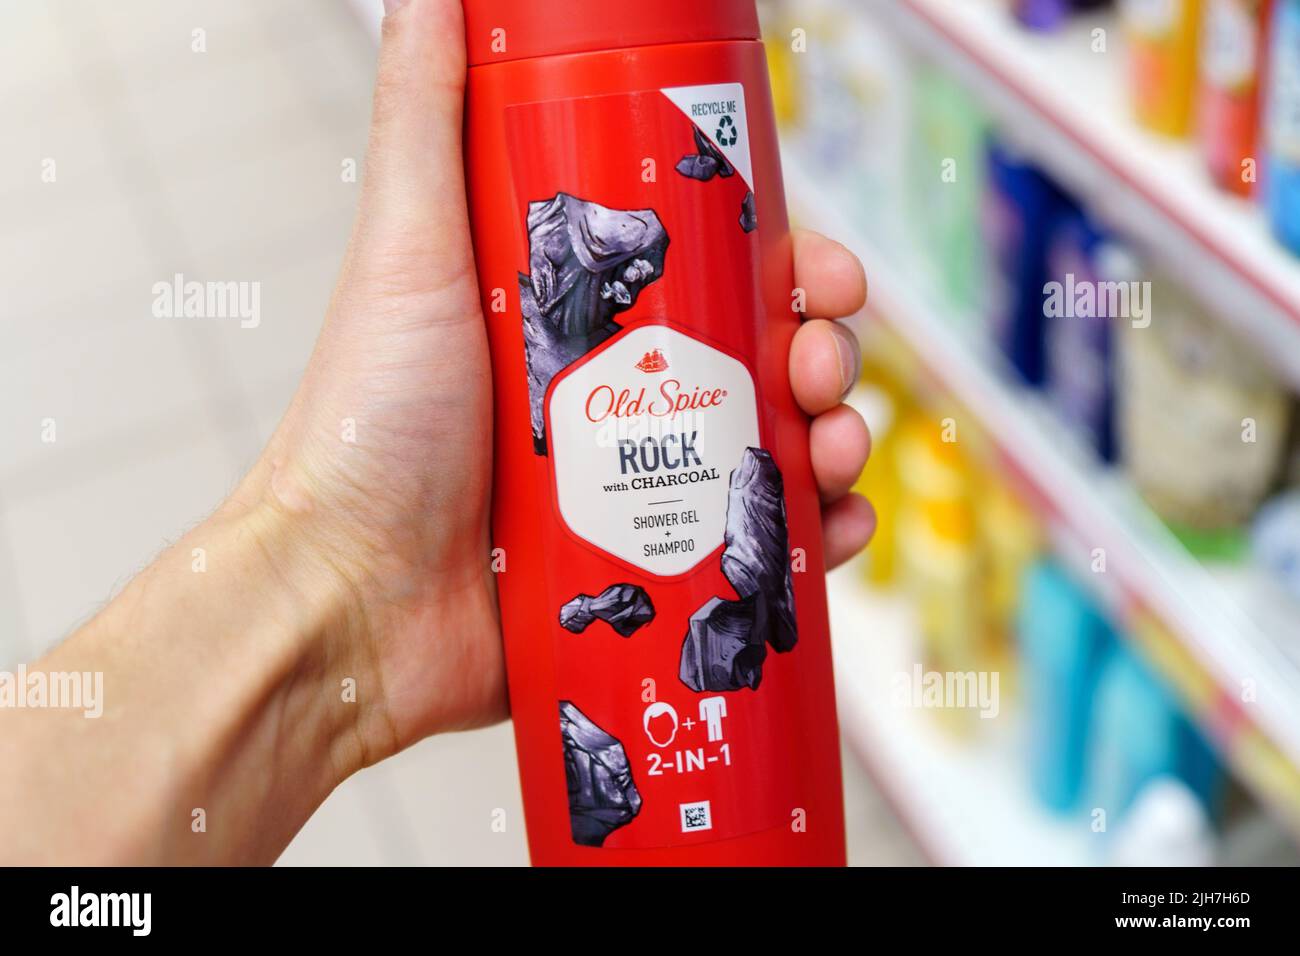 Tyumen, Russia-03 mai 2022: Le gel douche Old Spice est une marque américaine de produits pour hommes. Mise au point sélective Banque D'Images